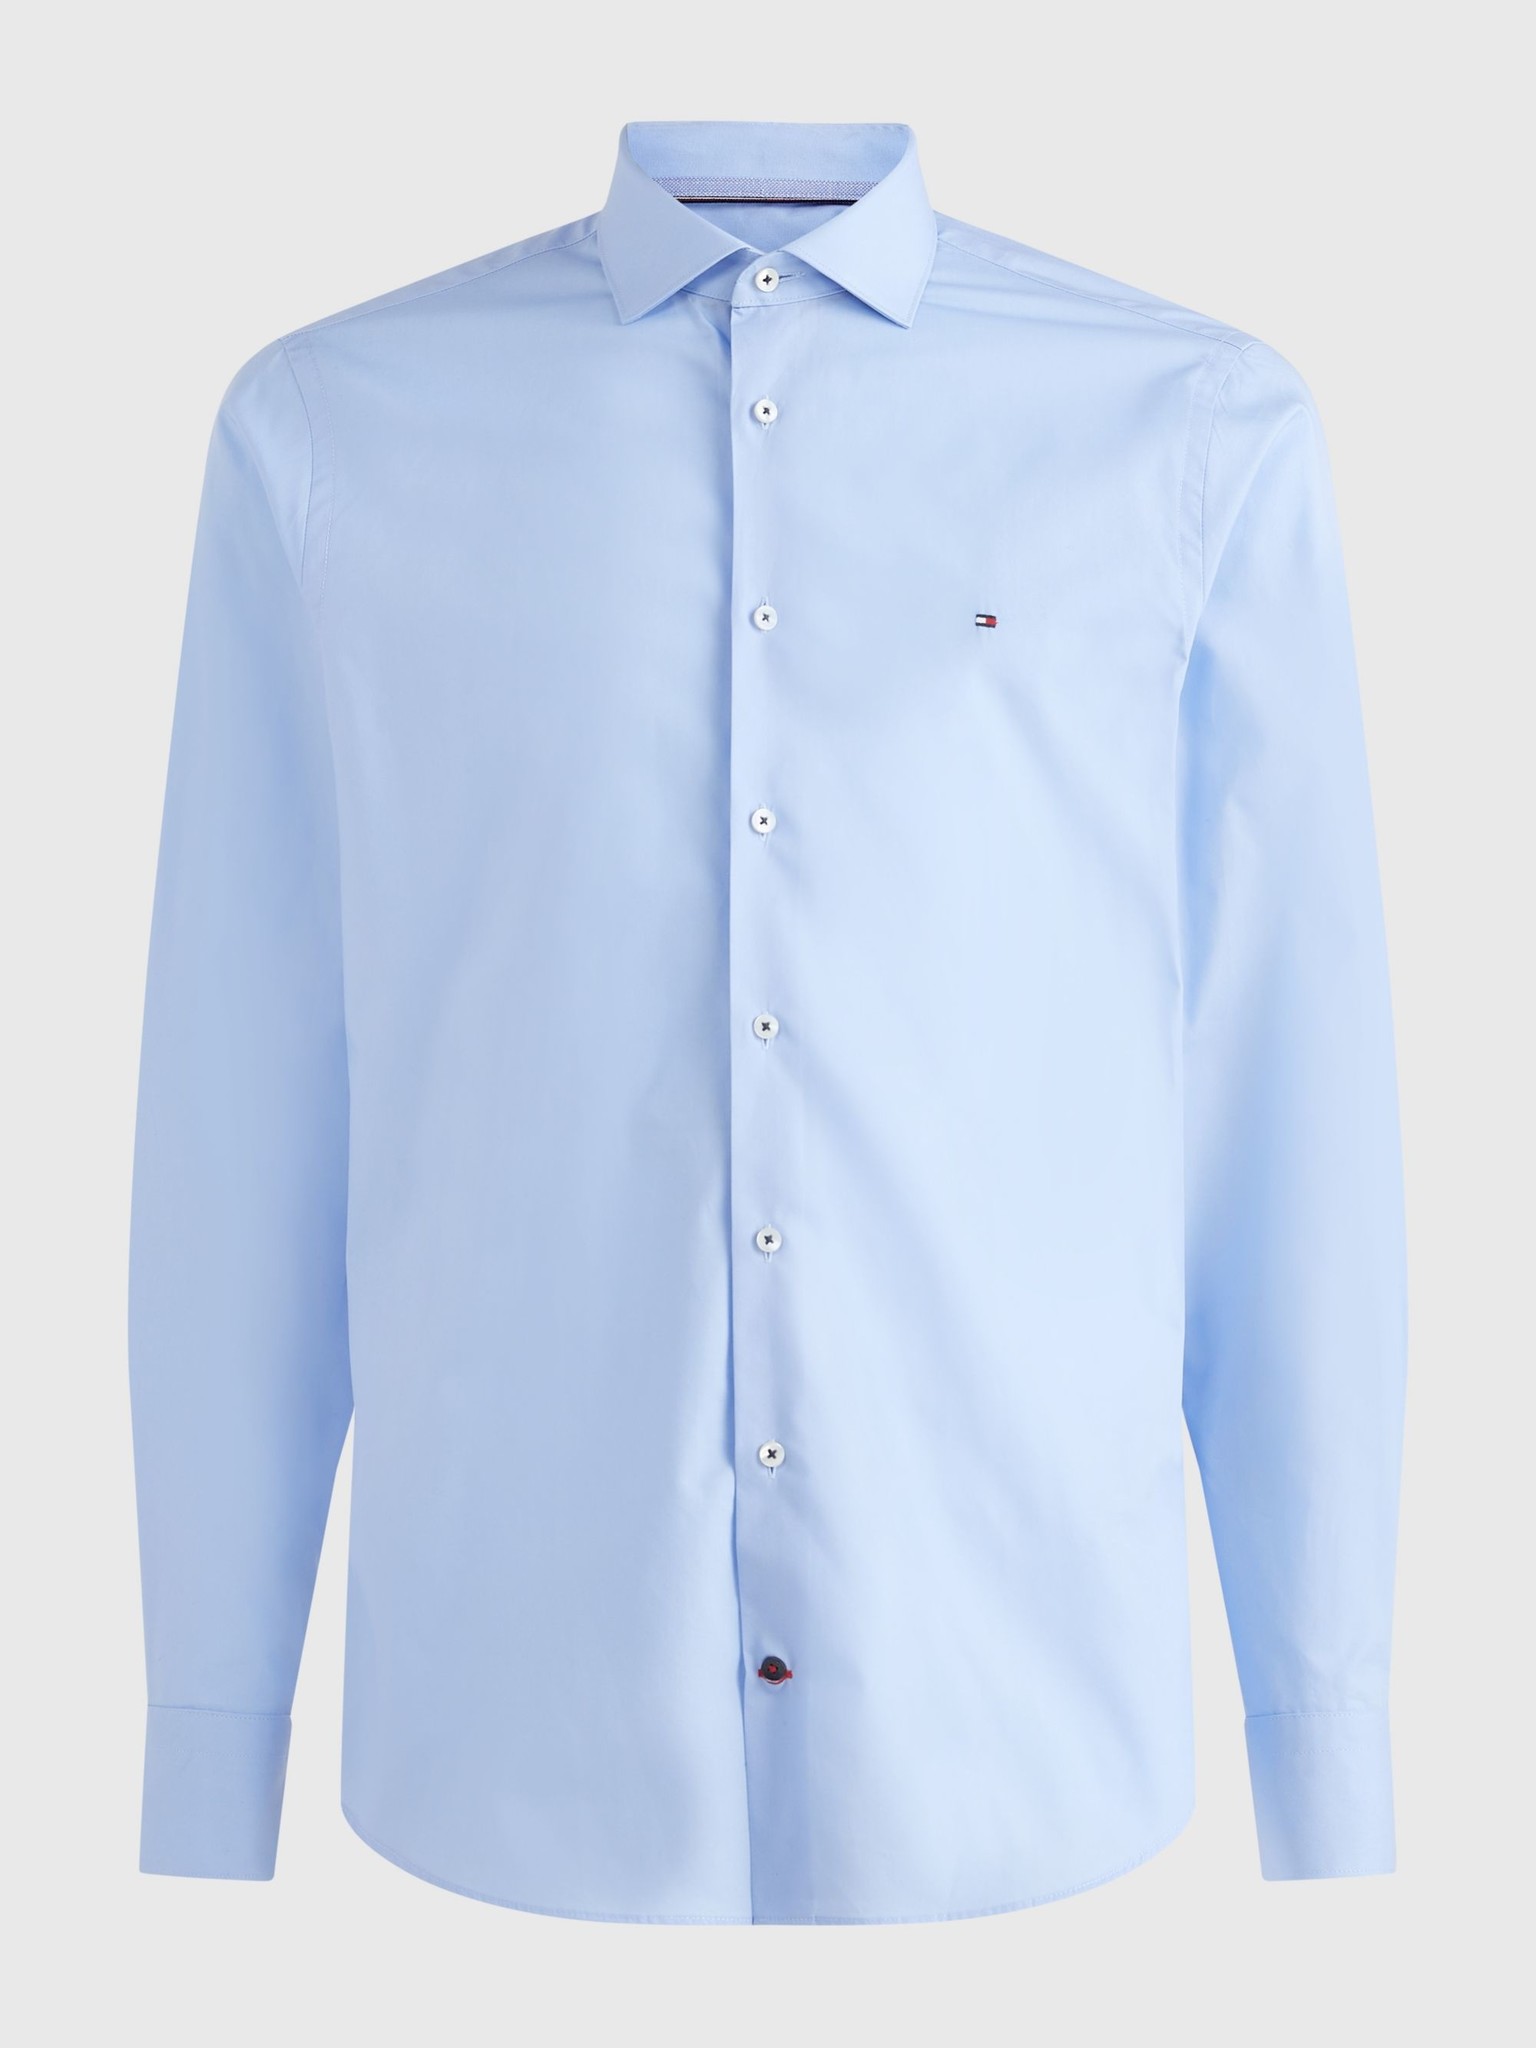 exotisch verwijzen Onbekwaamheid Tommy Hilfiger Overhemd Core Poplin Classic Slim Fit Licht Blauw  (TT0TT06391 - DXA) - Nieuwnieuw.com Herenmode